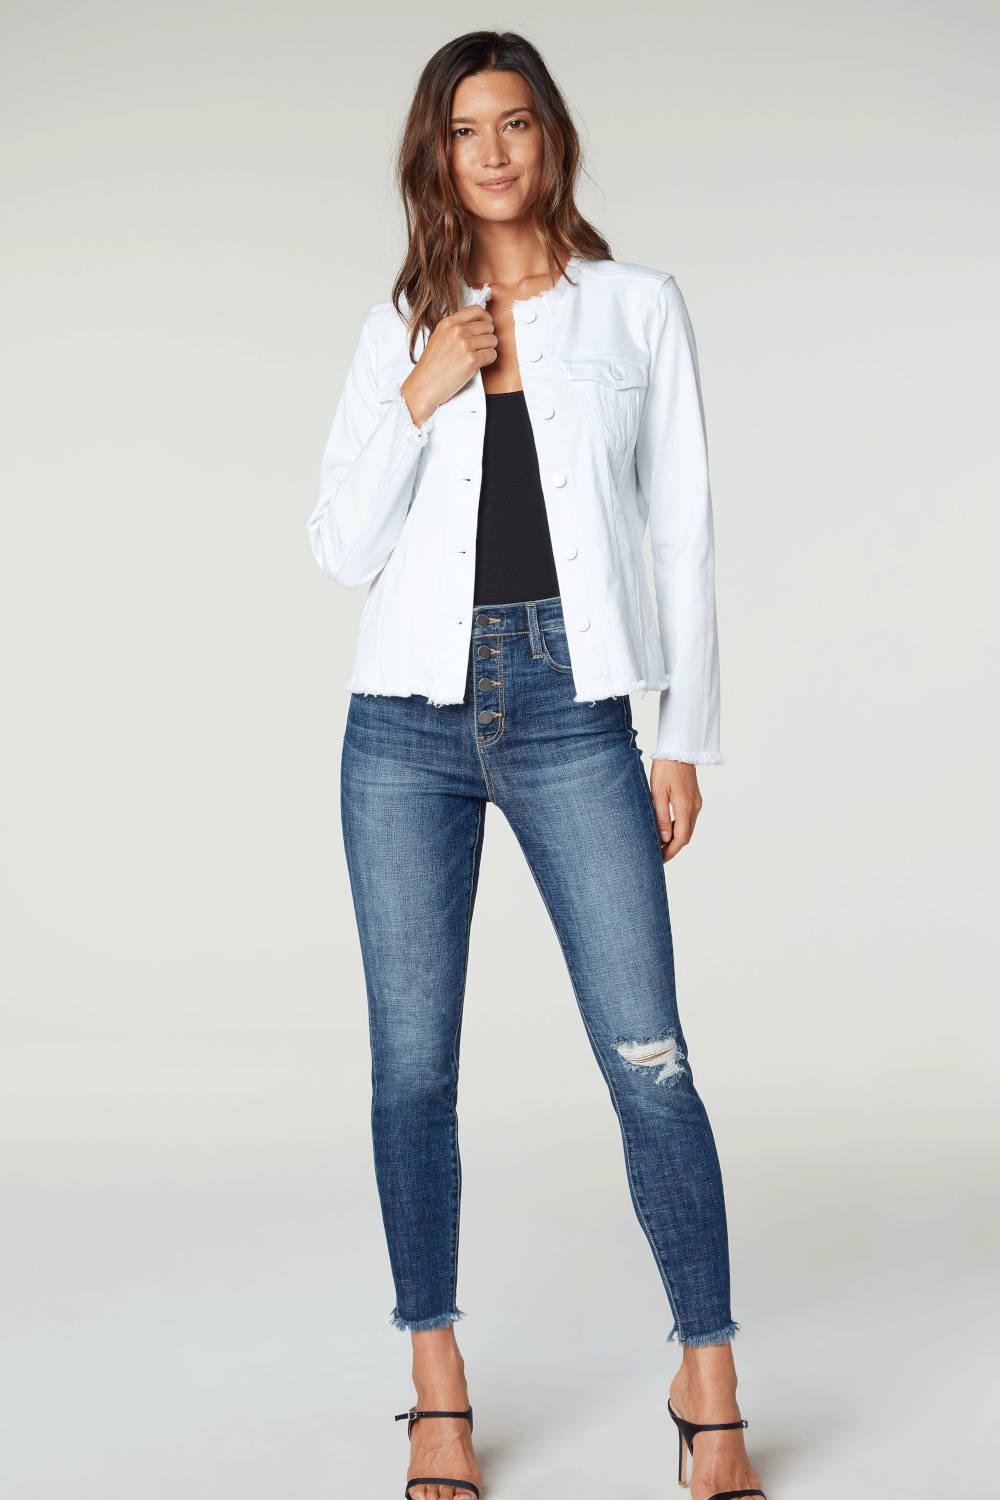 Women's Basic Collarless Denim Jacket Ladies Long Sleeve Washed Jean Biker  Top | eBay